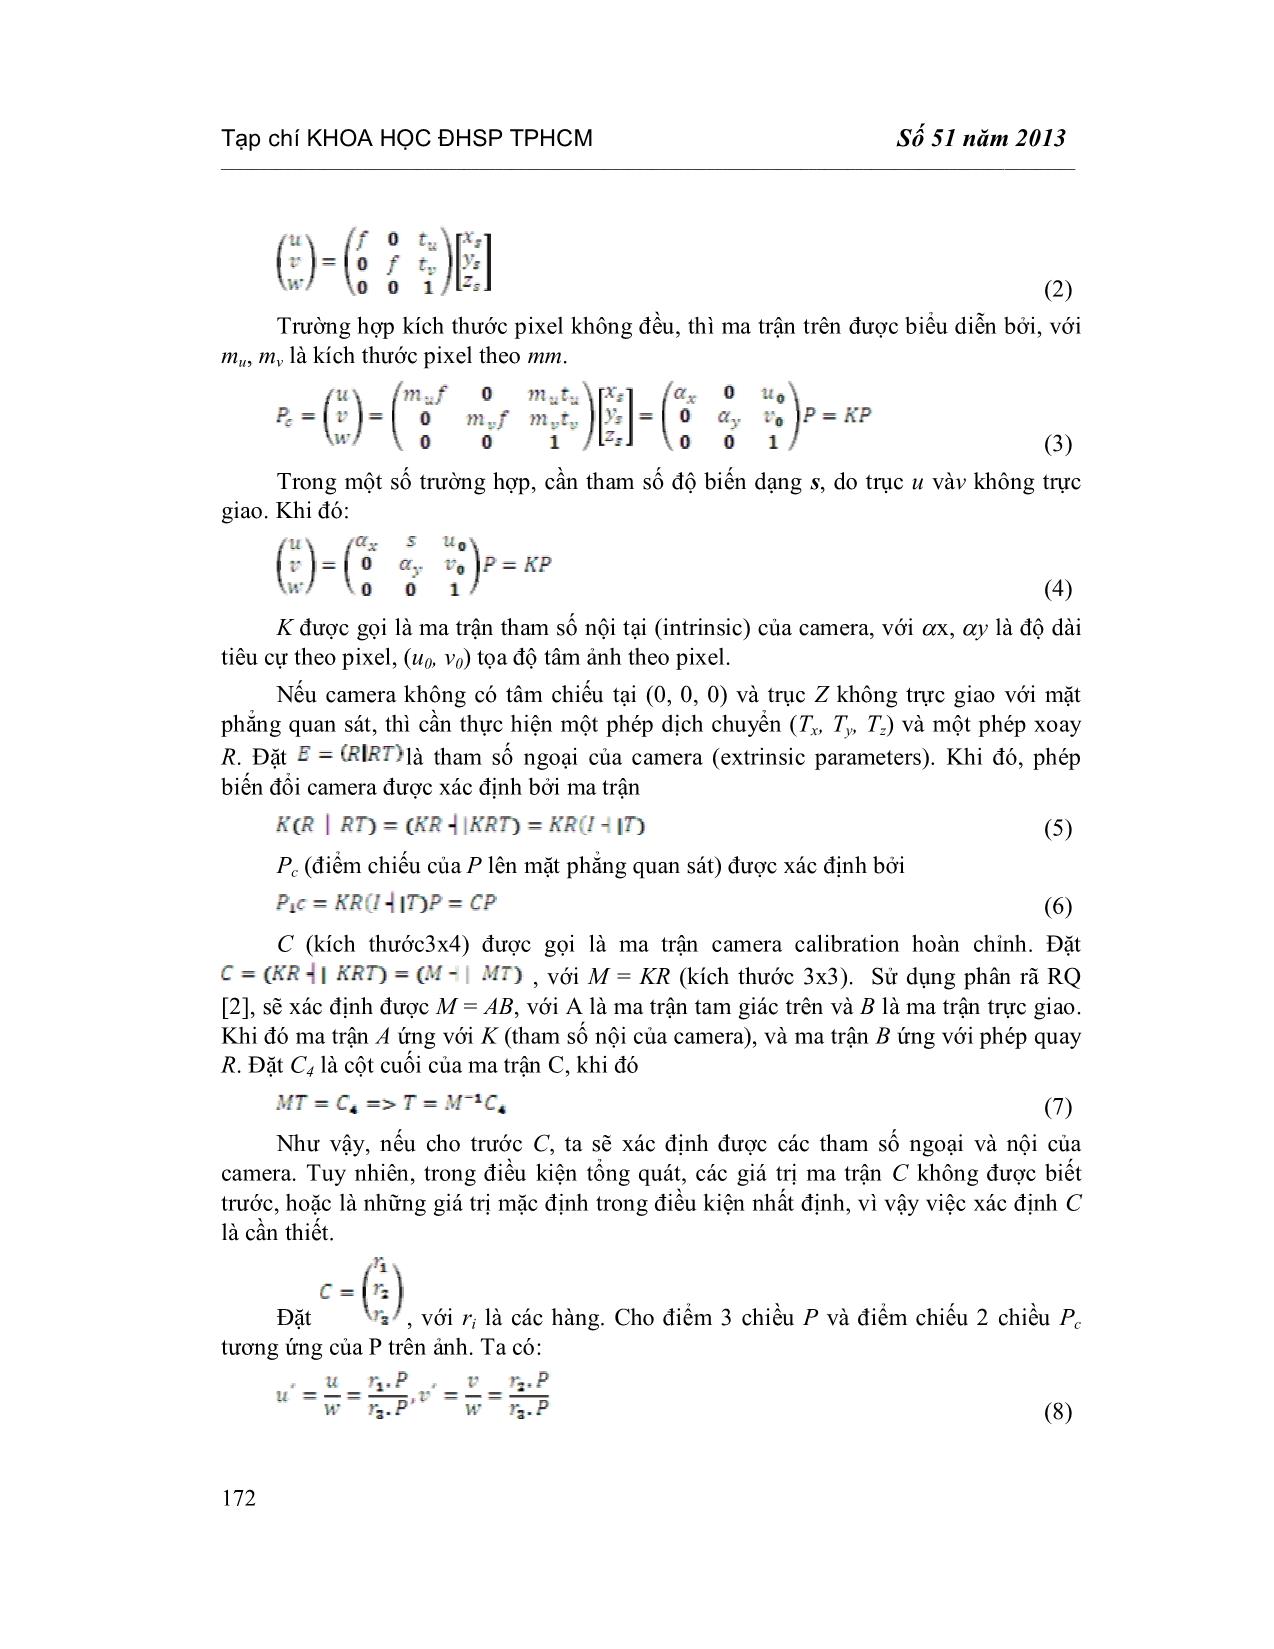 Kết hợp đặc trưng cục bộ và nhận dạng chữ quang học trong bài toán tăng cường hình ảnh cho tài liệu văn bản trang 4